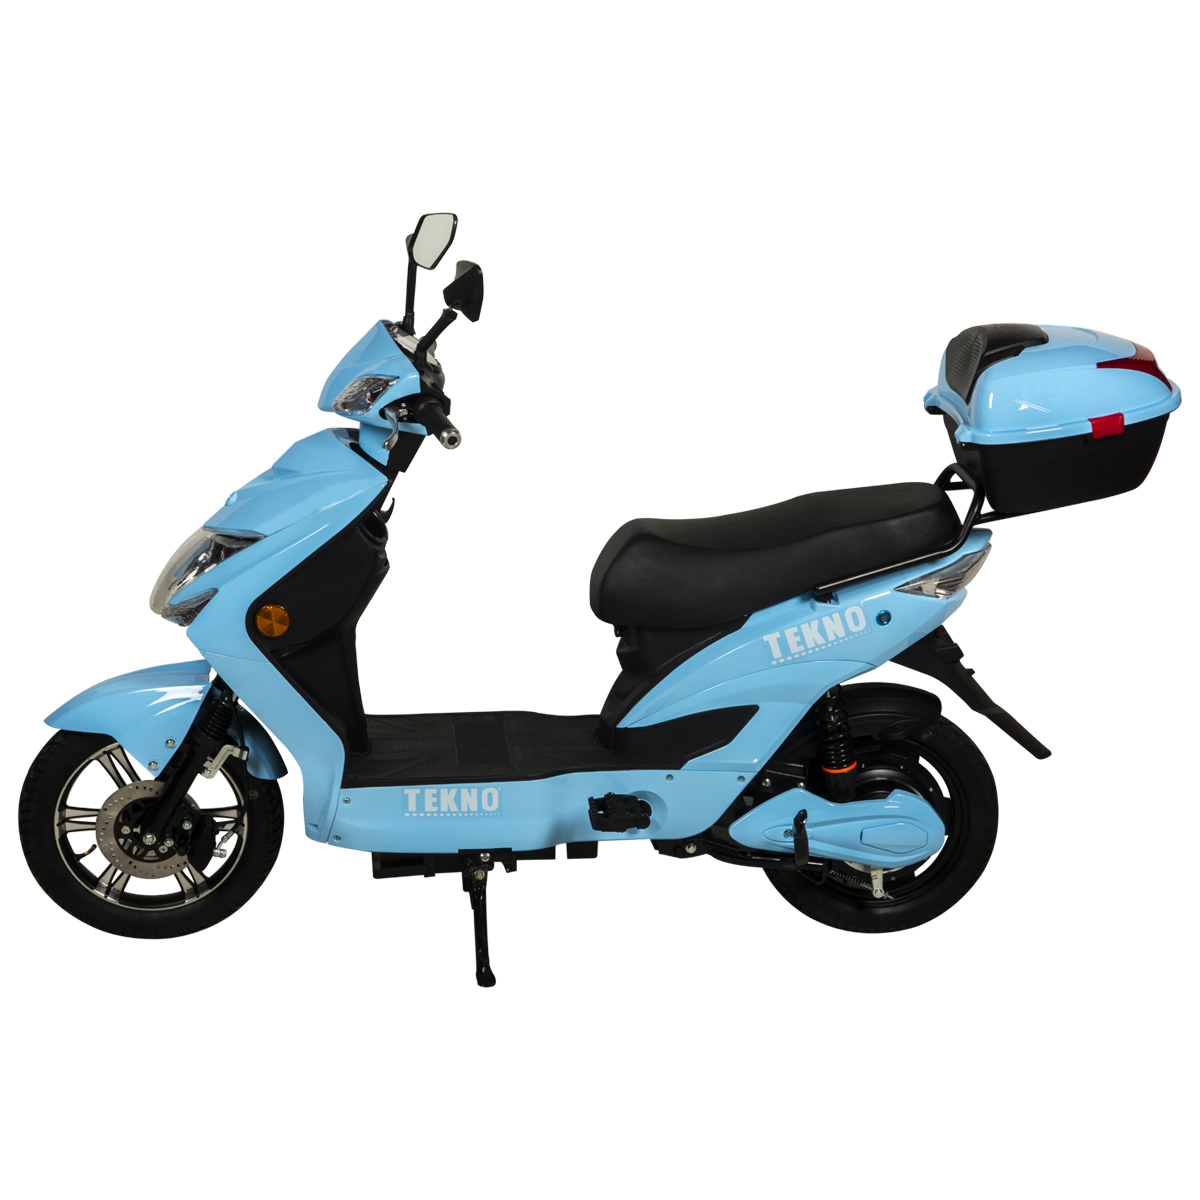 Scooter Eléctrico con Bocina y Luz Azul - ClubOferta